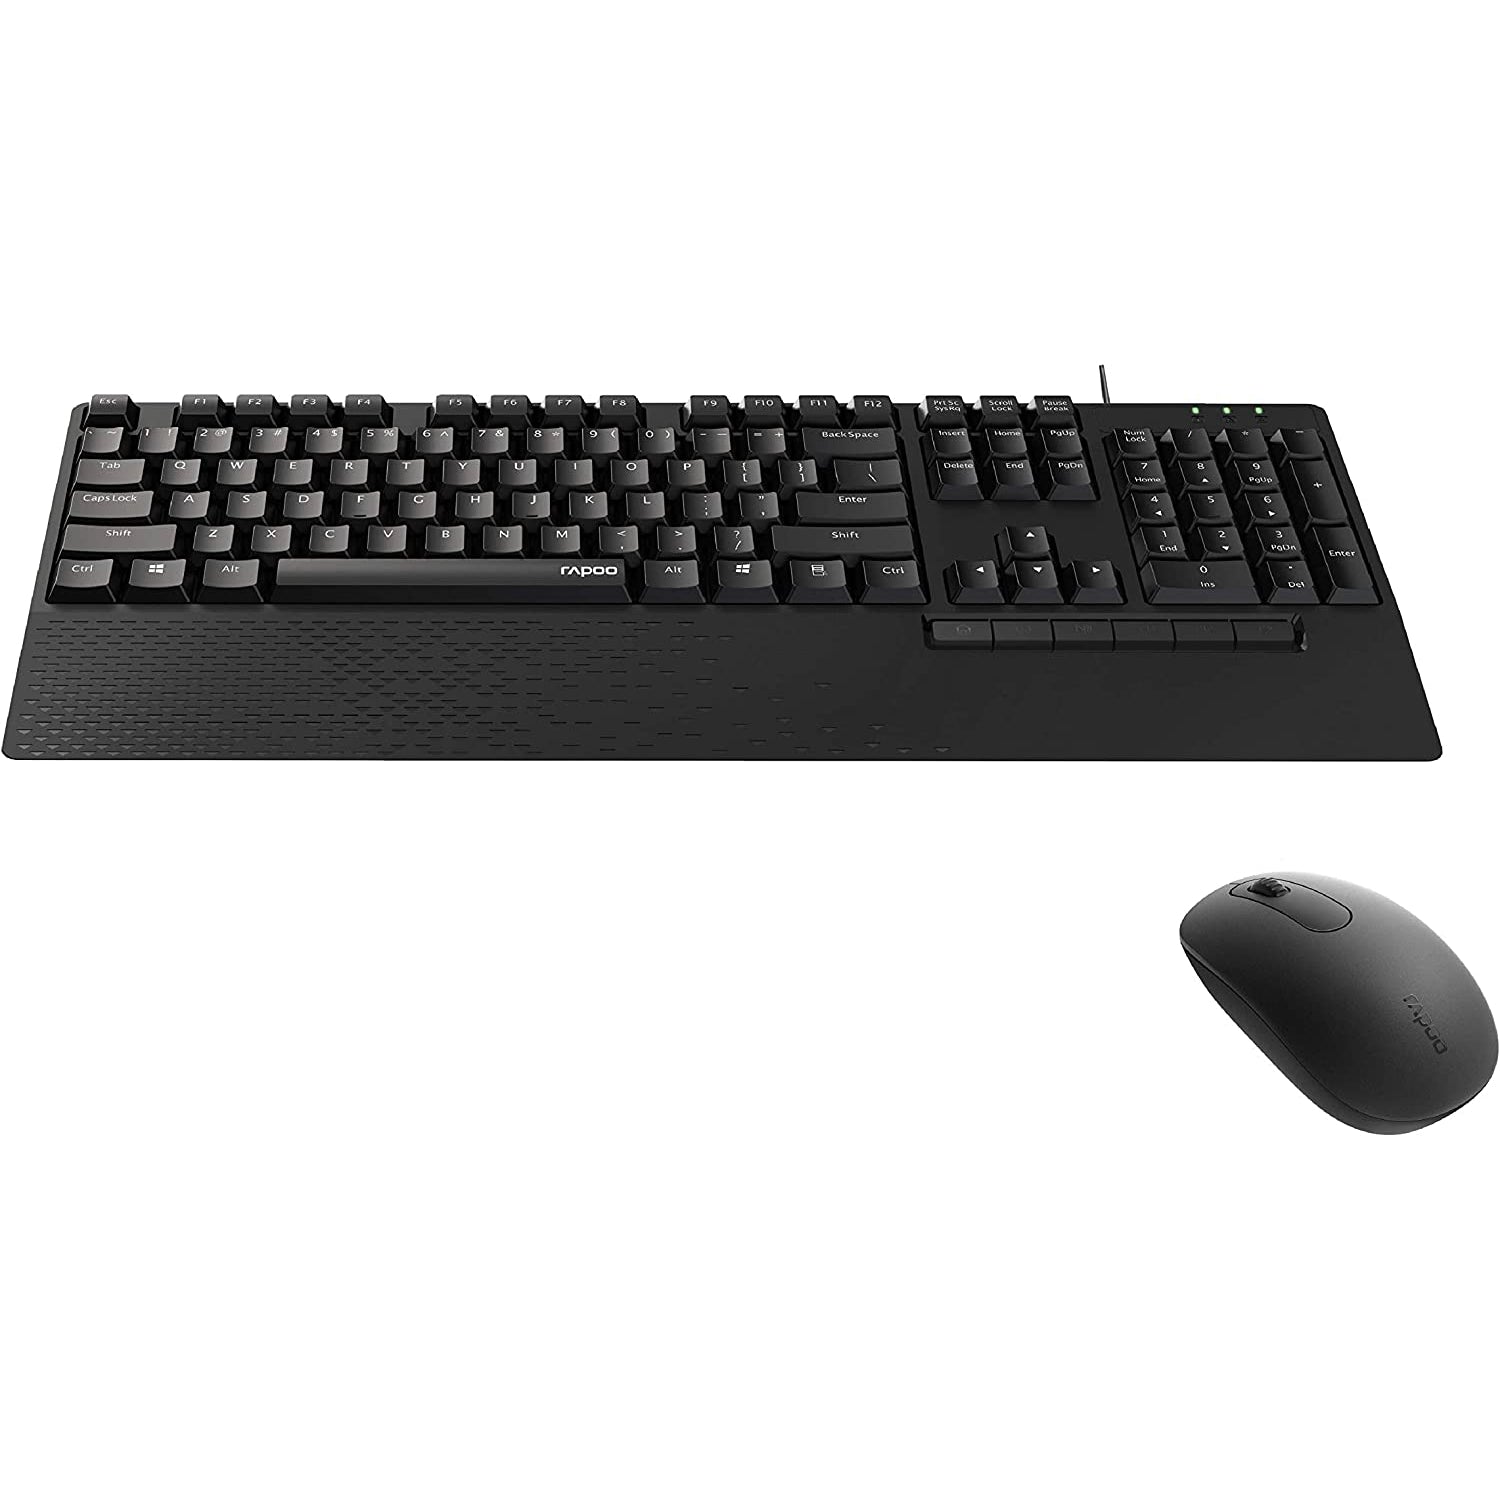 Rapoo NX2000 Wired Keyboard Mouse Desktop Combo Set, Black - Refurbished Excellent